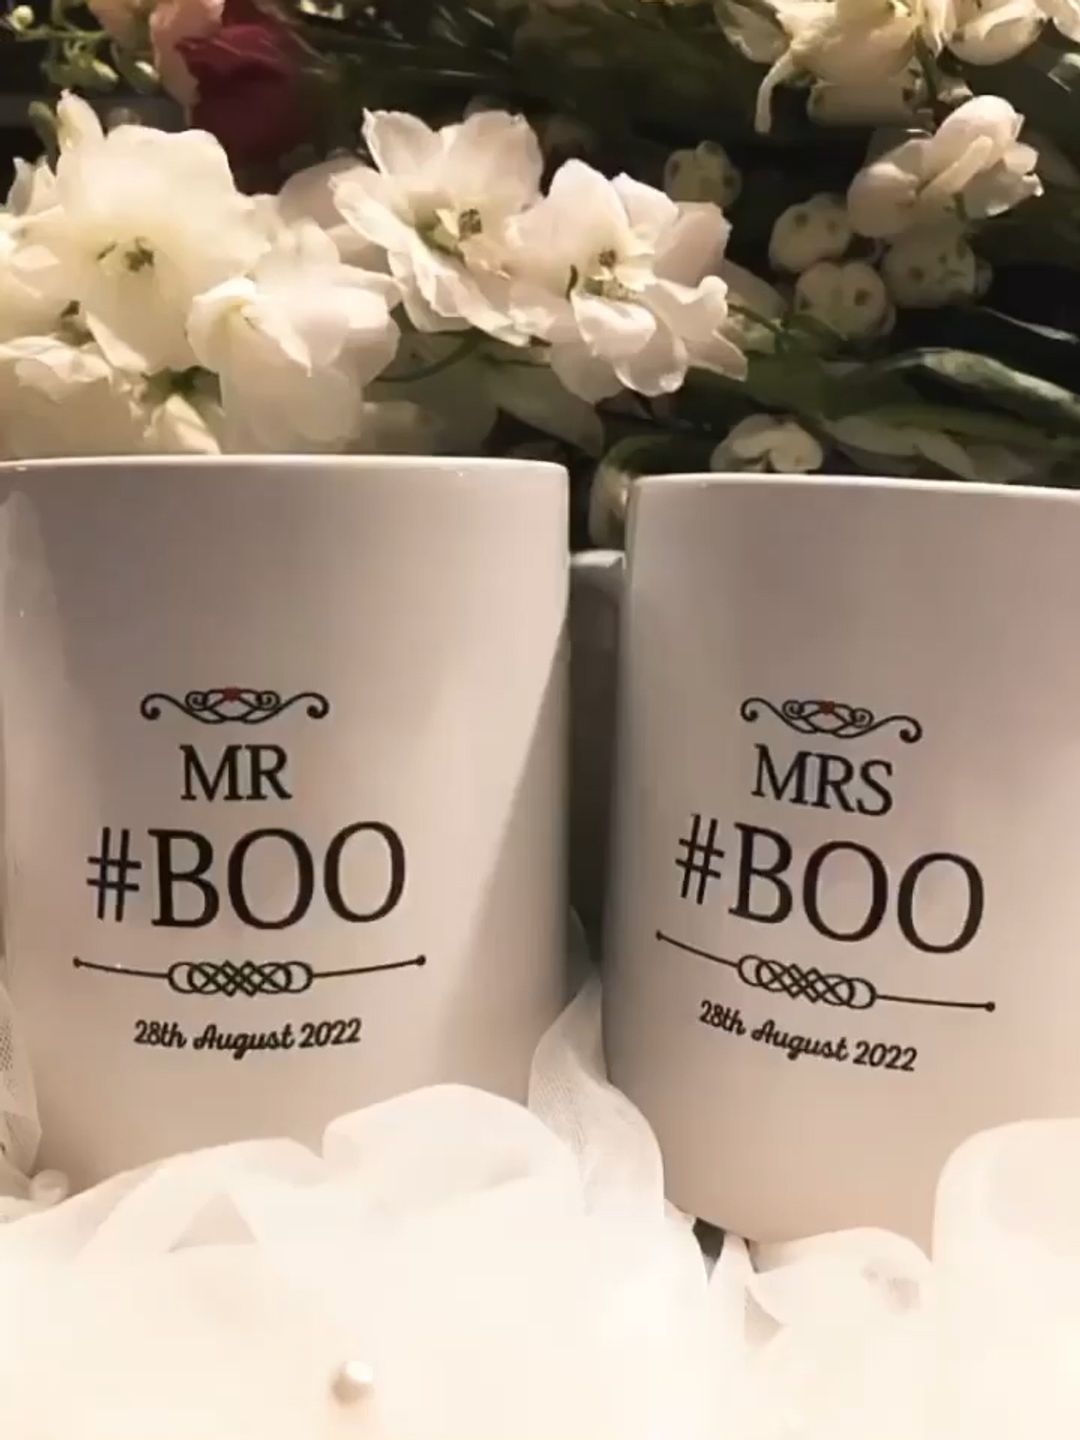 Trisha Goddard's wedding mugs